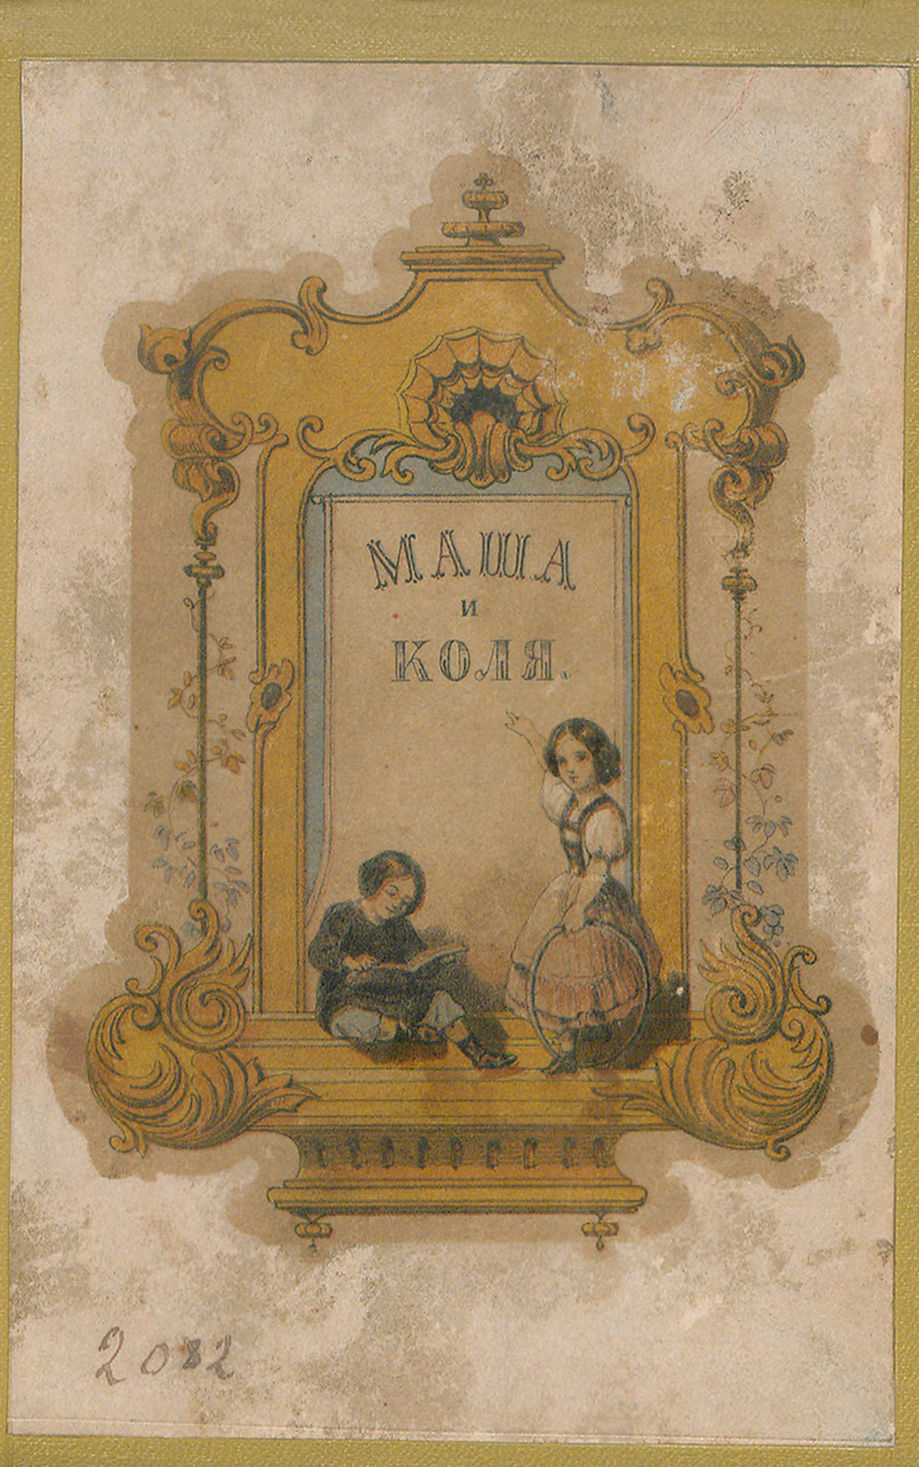 Маша и Коля, книжечка для малых детей, начинающих понимать что делается вокруг их